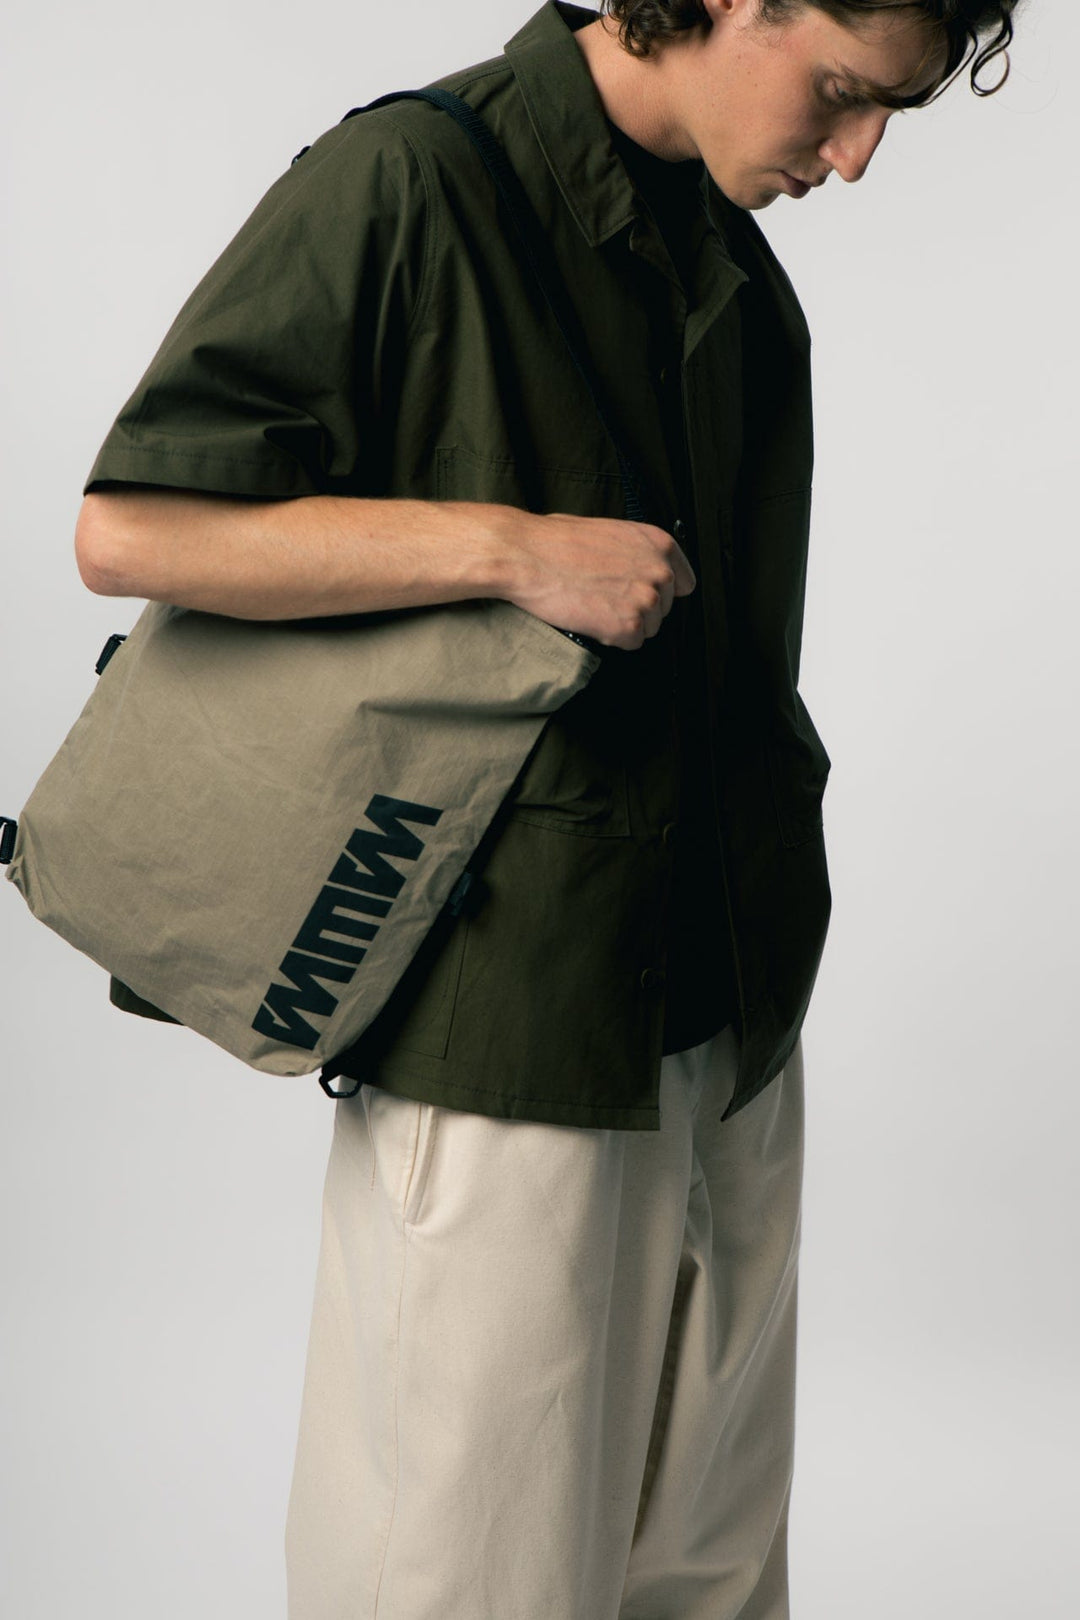 Kartis Extendable Messenger Bag